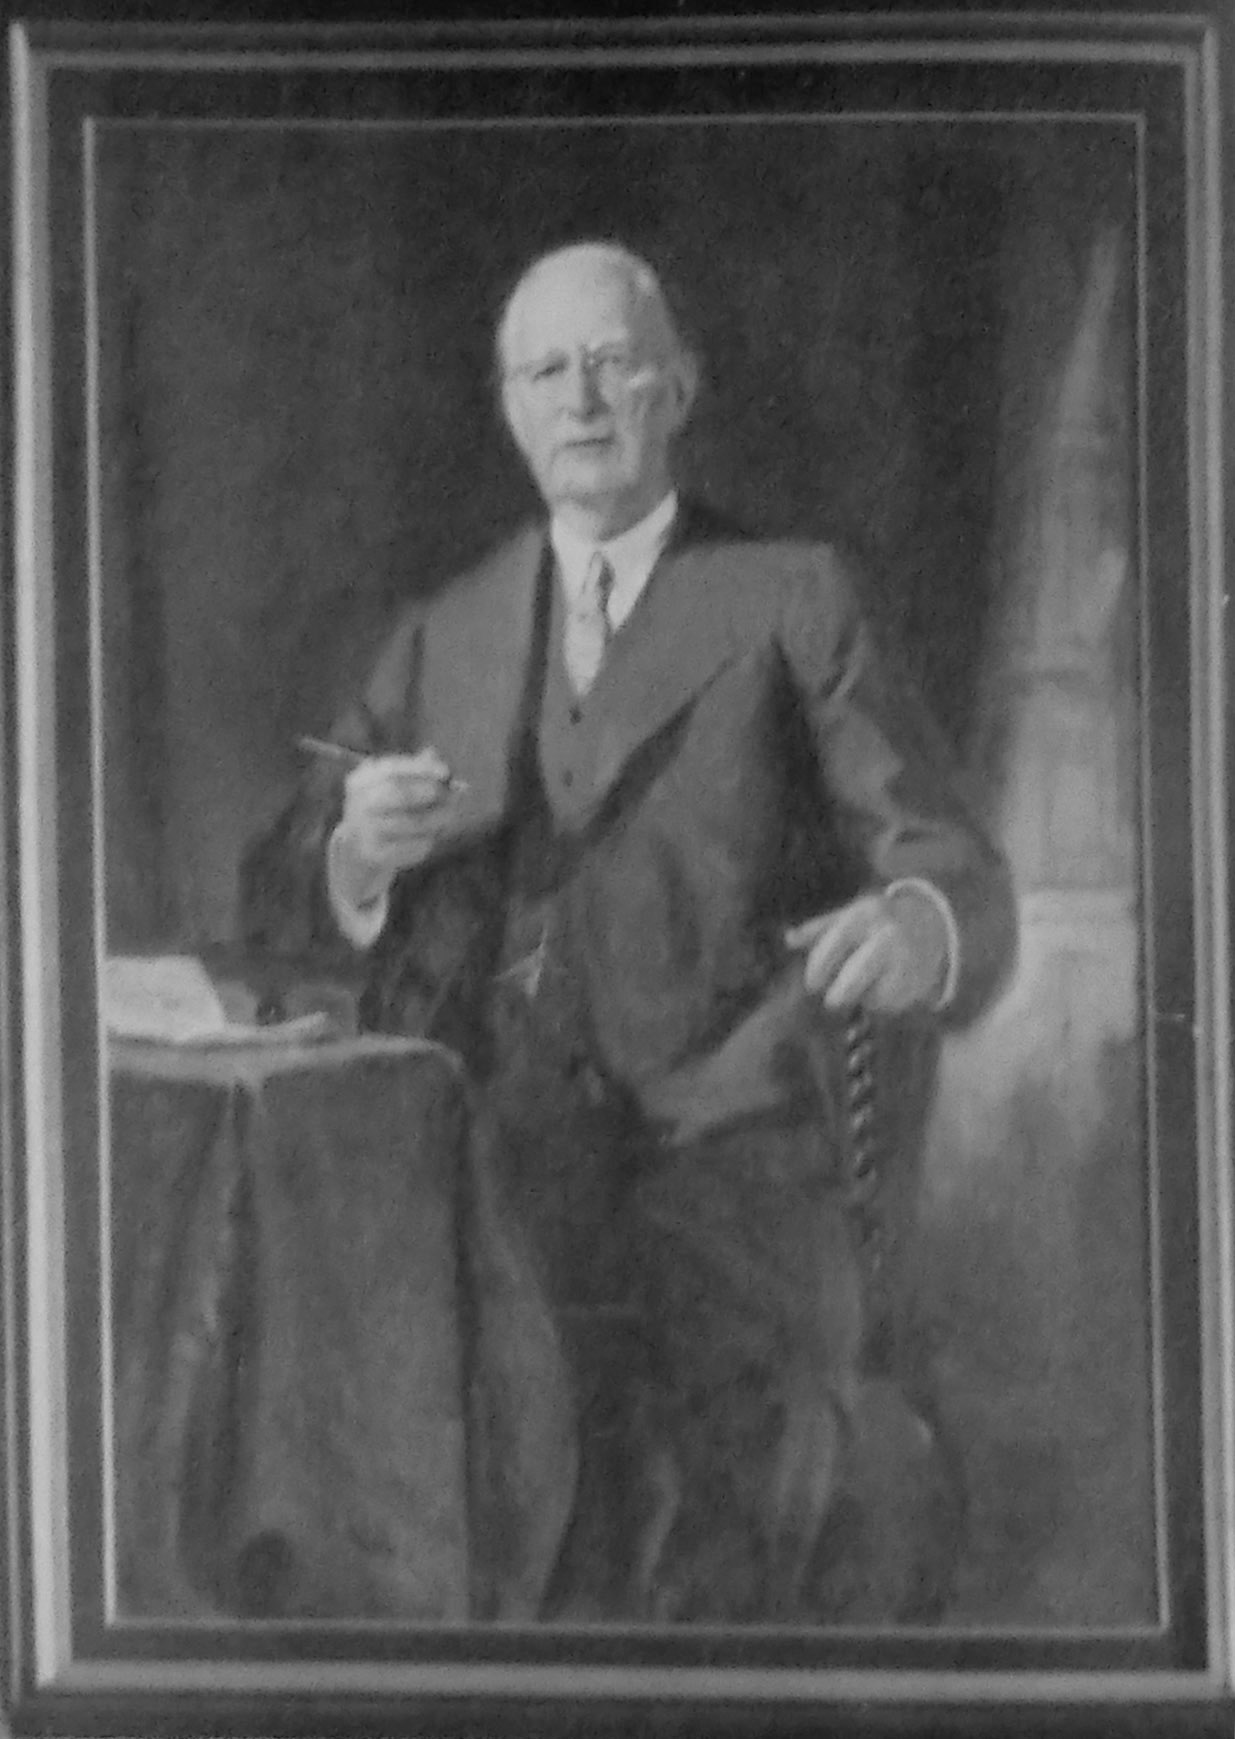 William C Hill Principal 1910 - 1945